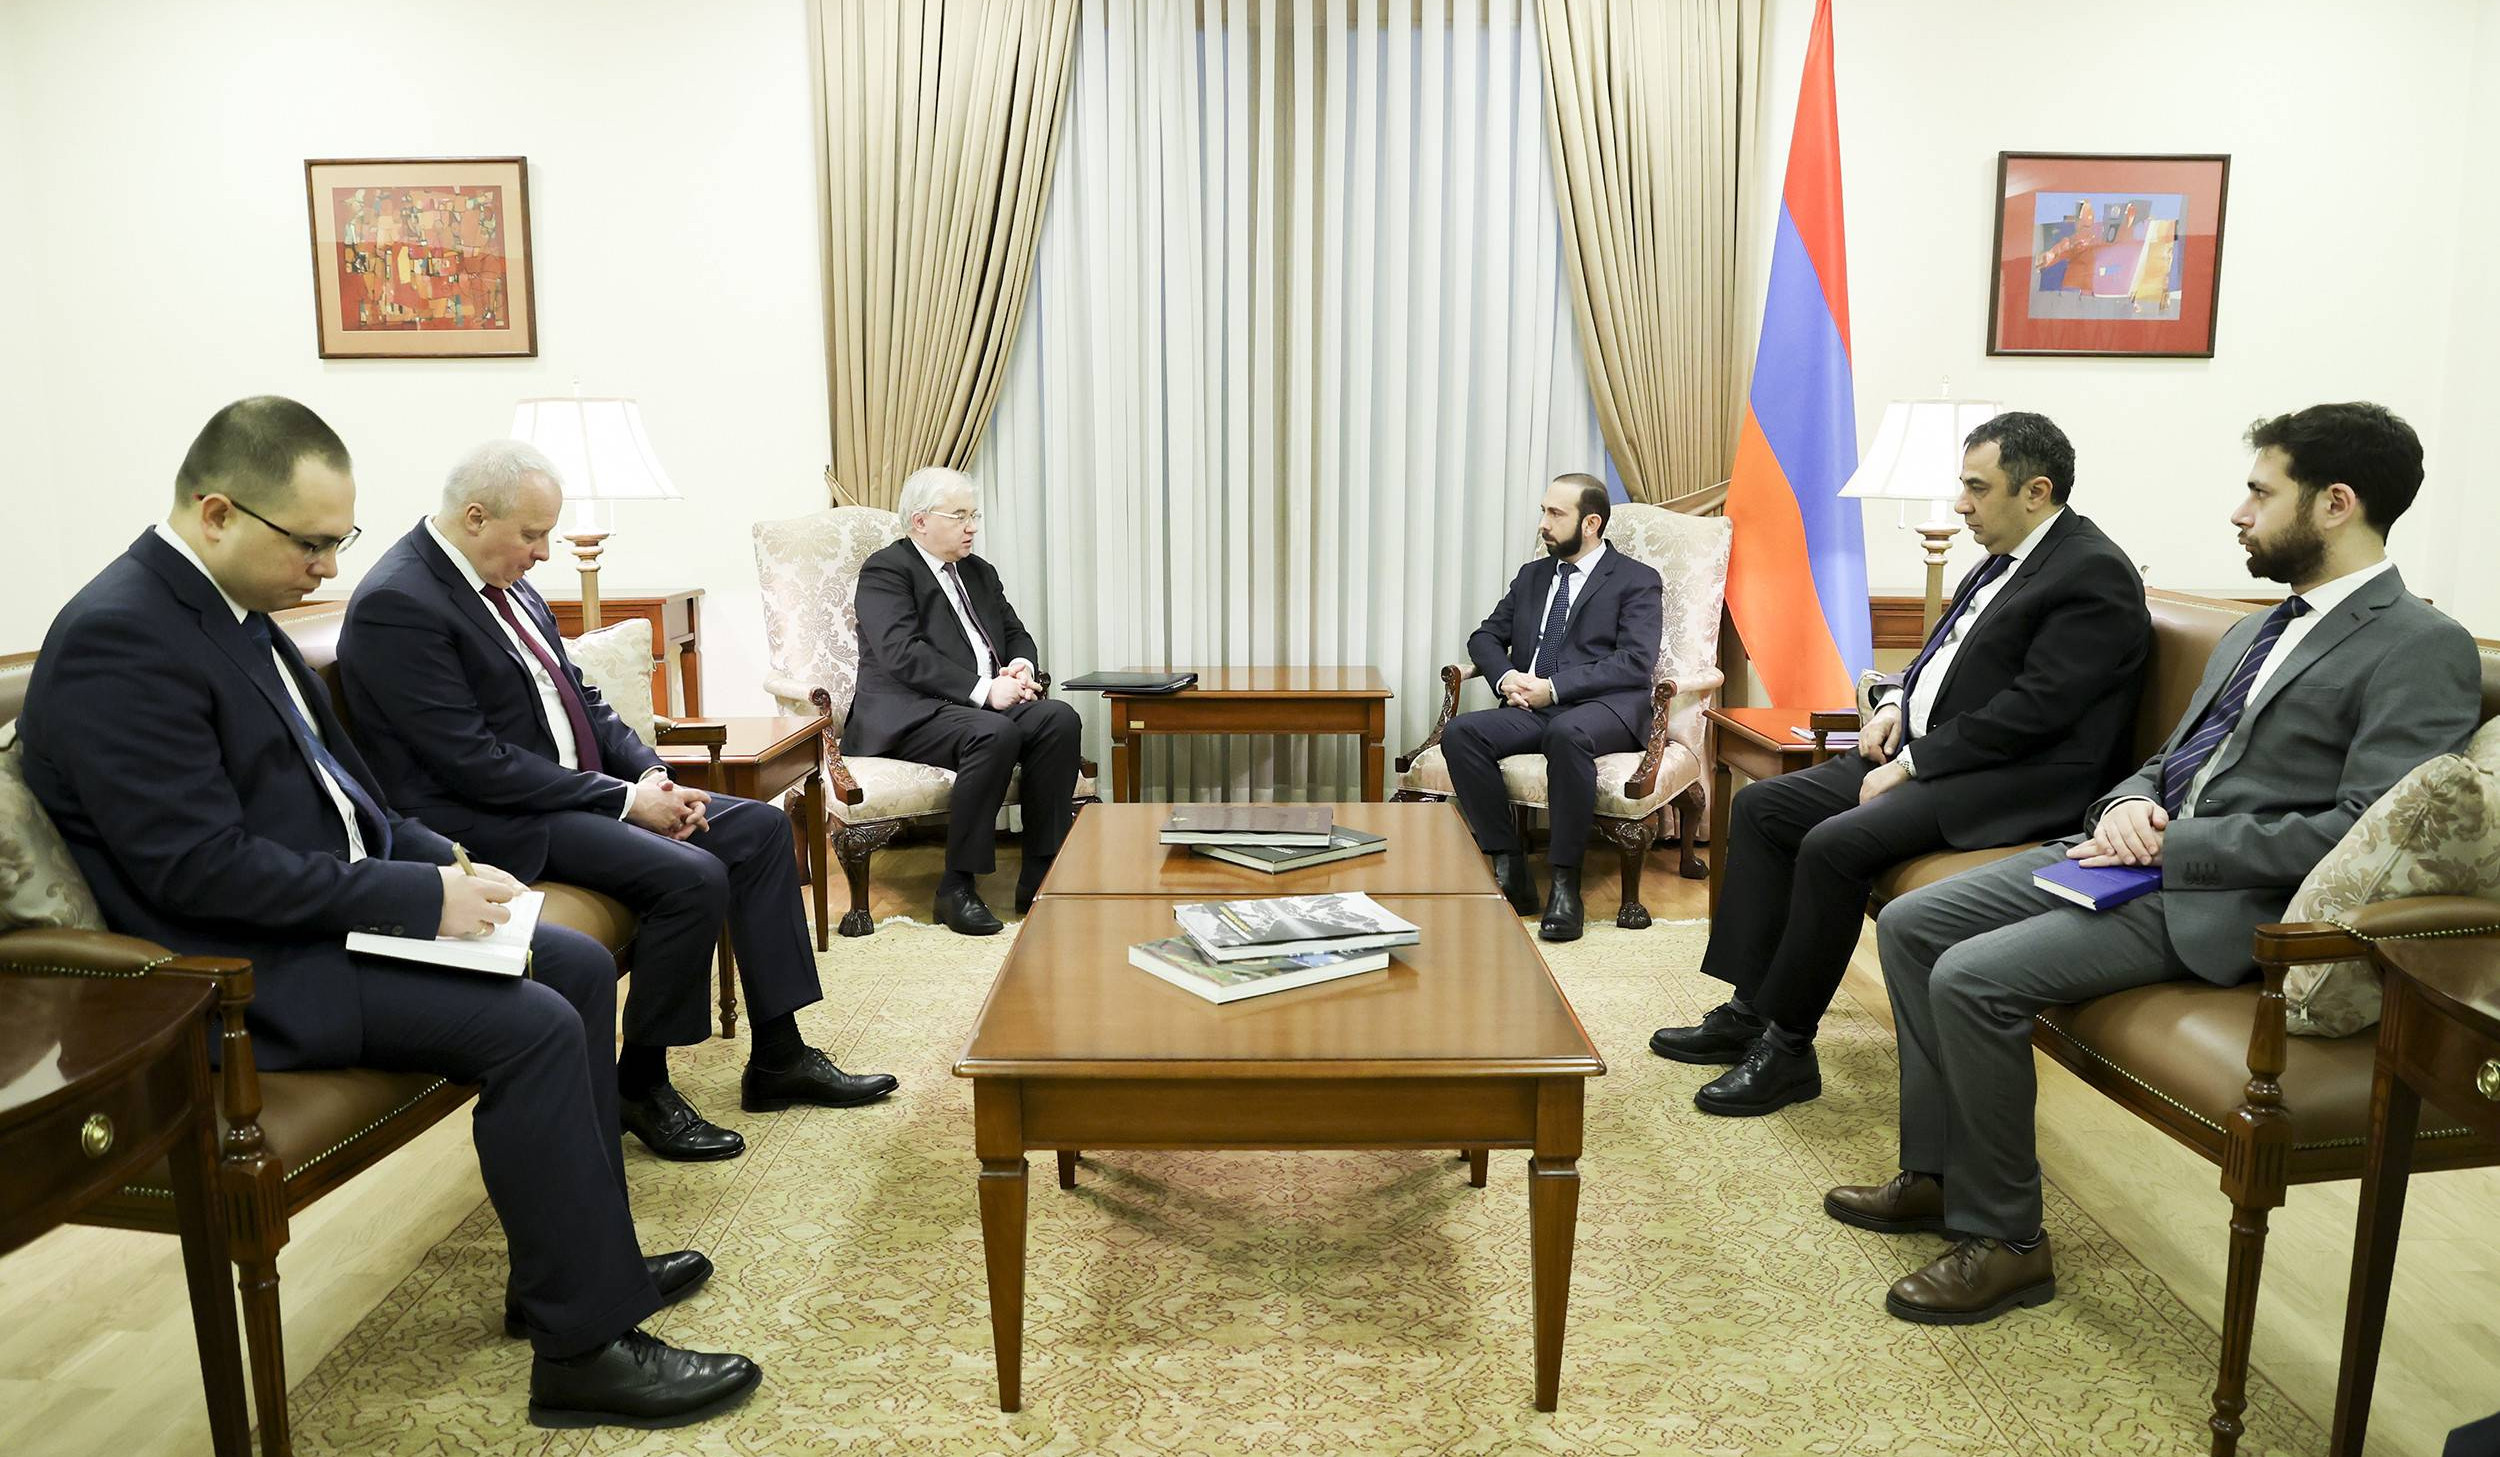 Мирзоян и Ховаев обменялись мнениями о последних развитиях в процессе урегулирования отношений между Арменией и Азербайджаном